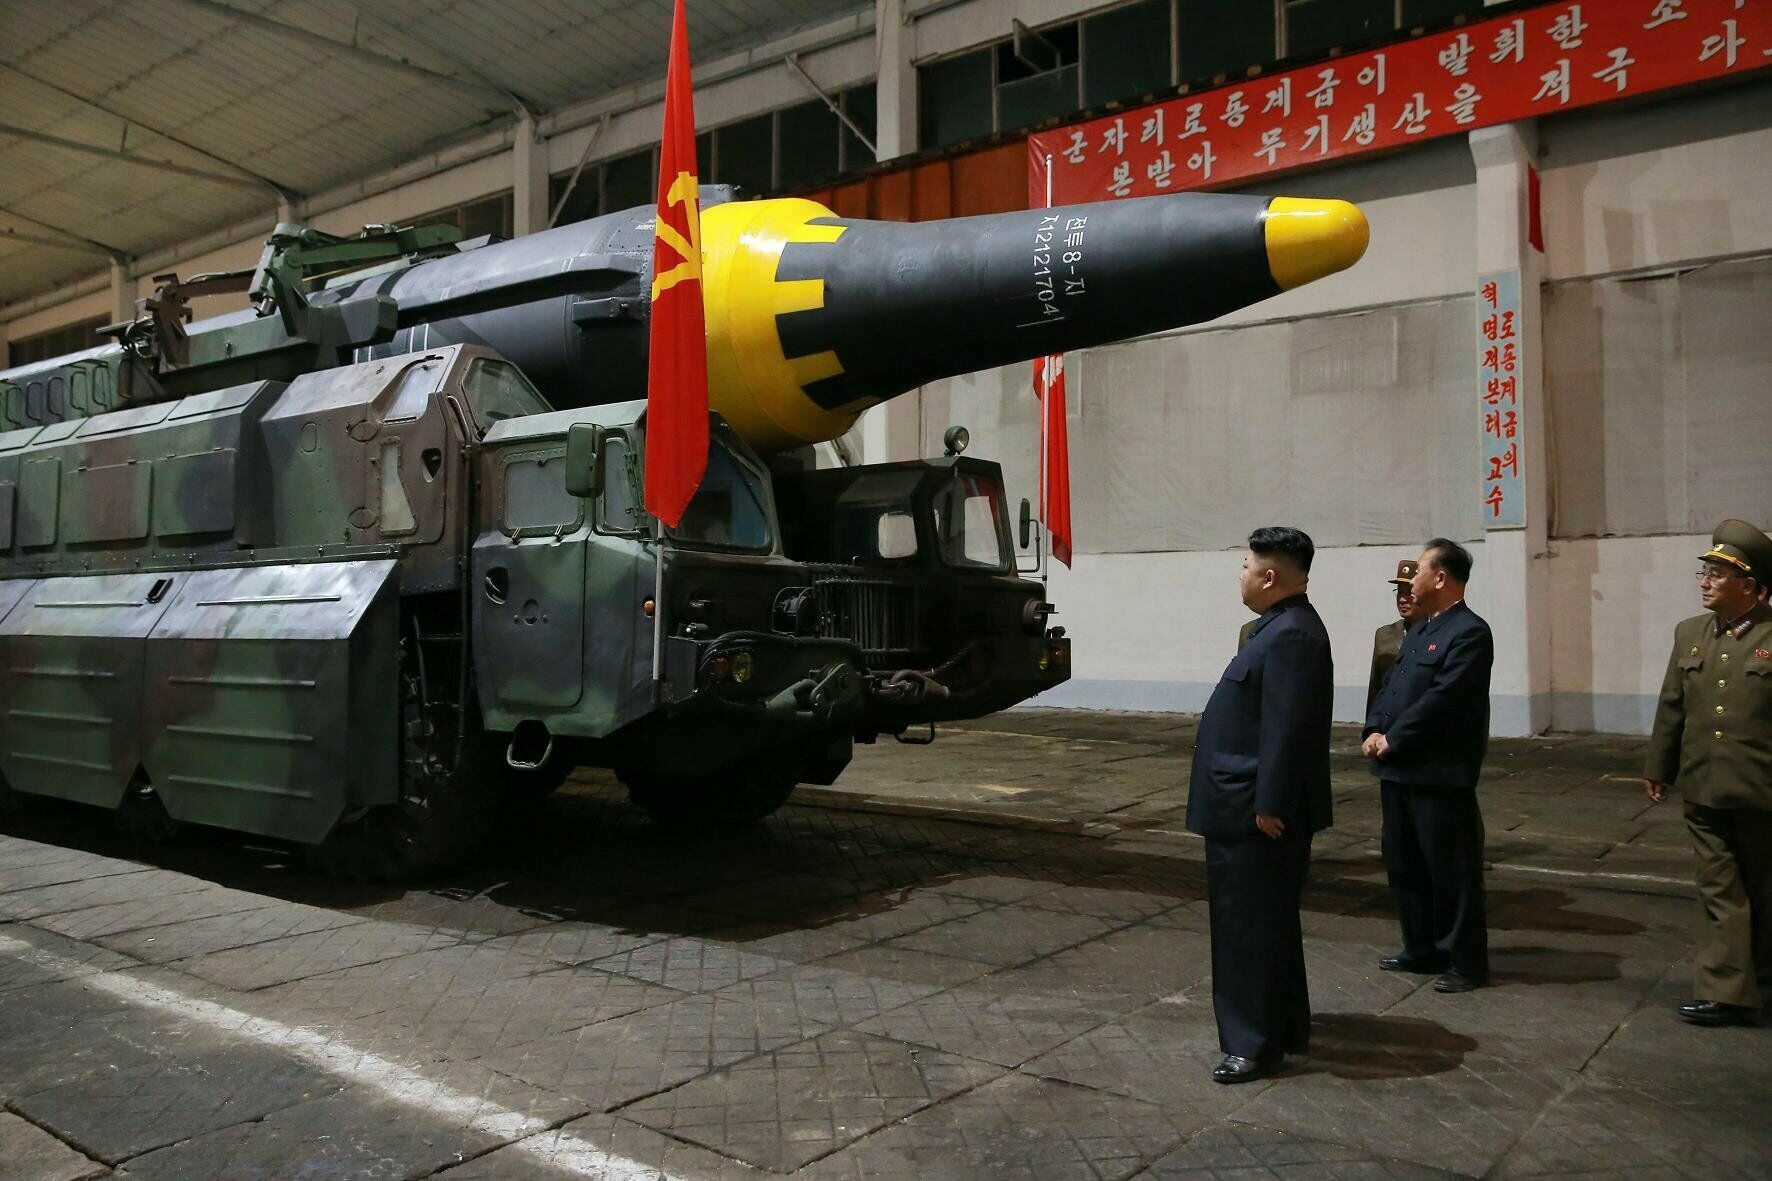 КНДР пойдет на переговоры с США при условии признания ее ядерной державой